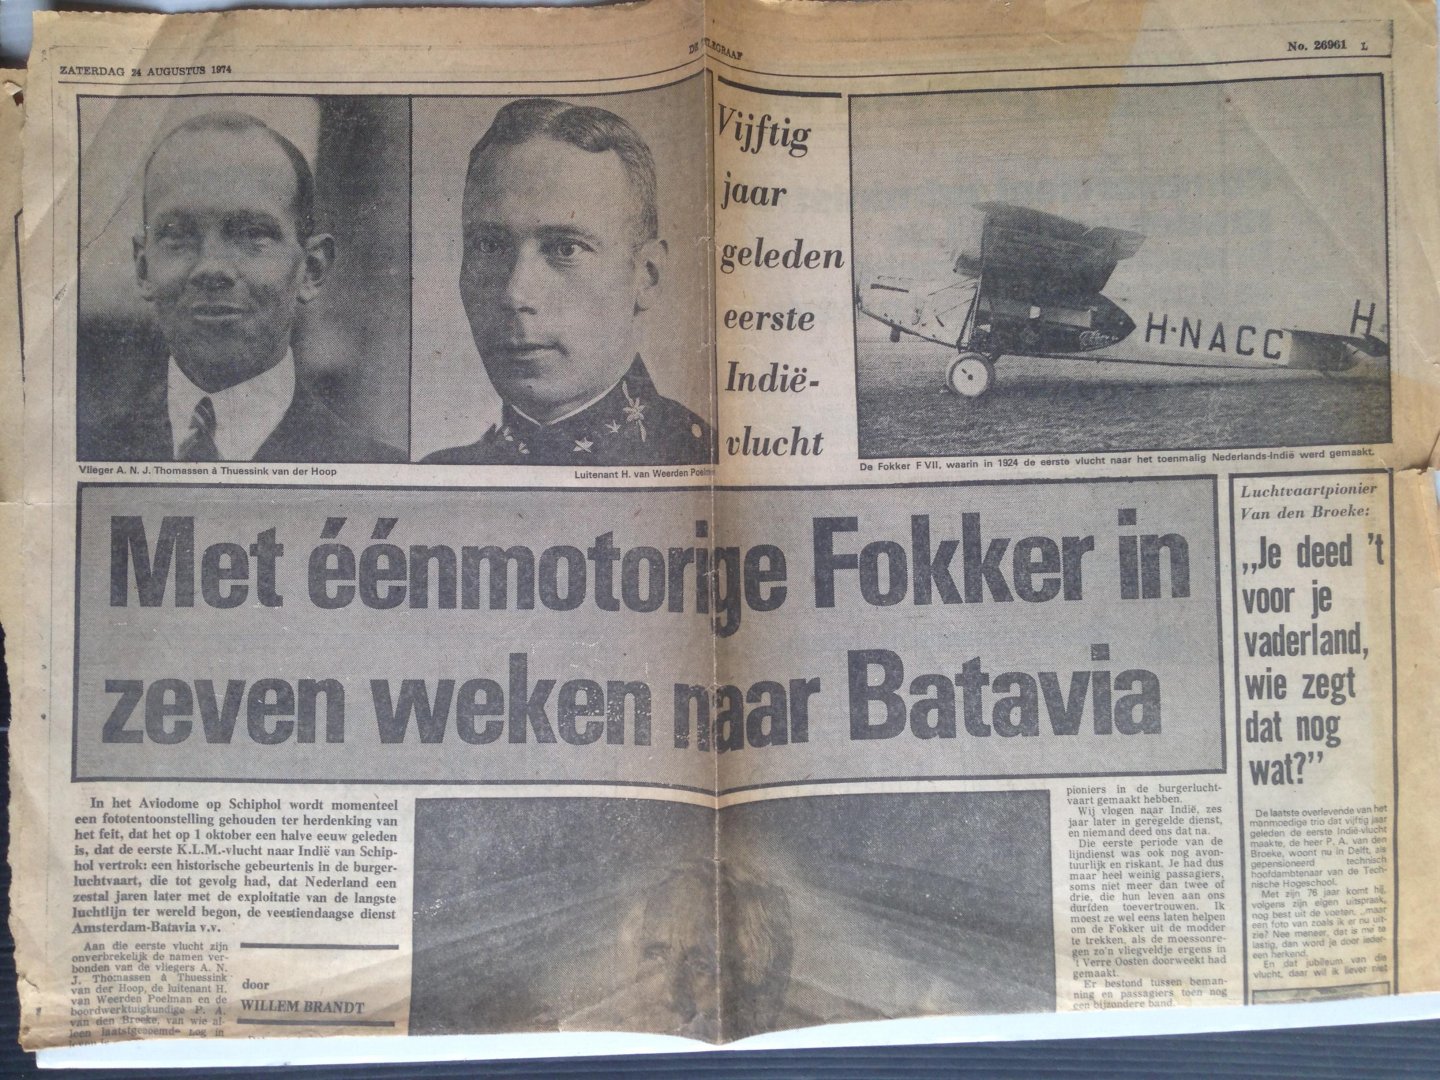  - Artikel Met nmotorige Fokker in zeven weken naar Batavia, 50 jaar geleden eerste Indie-vlucht